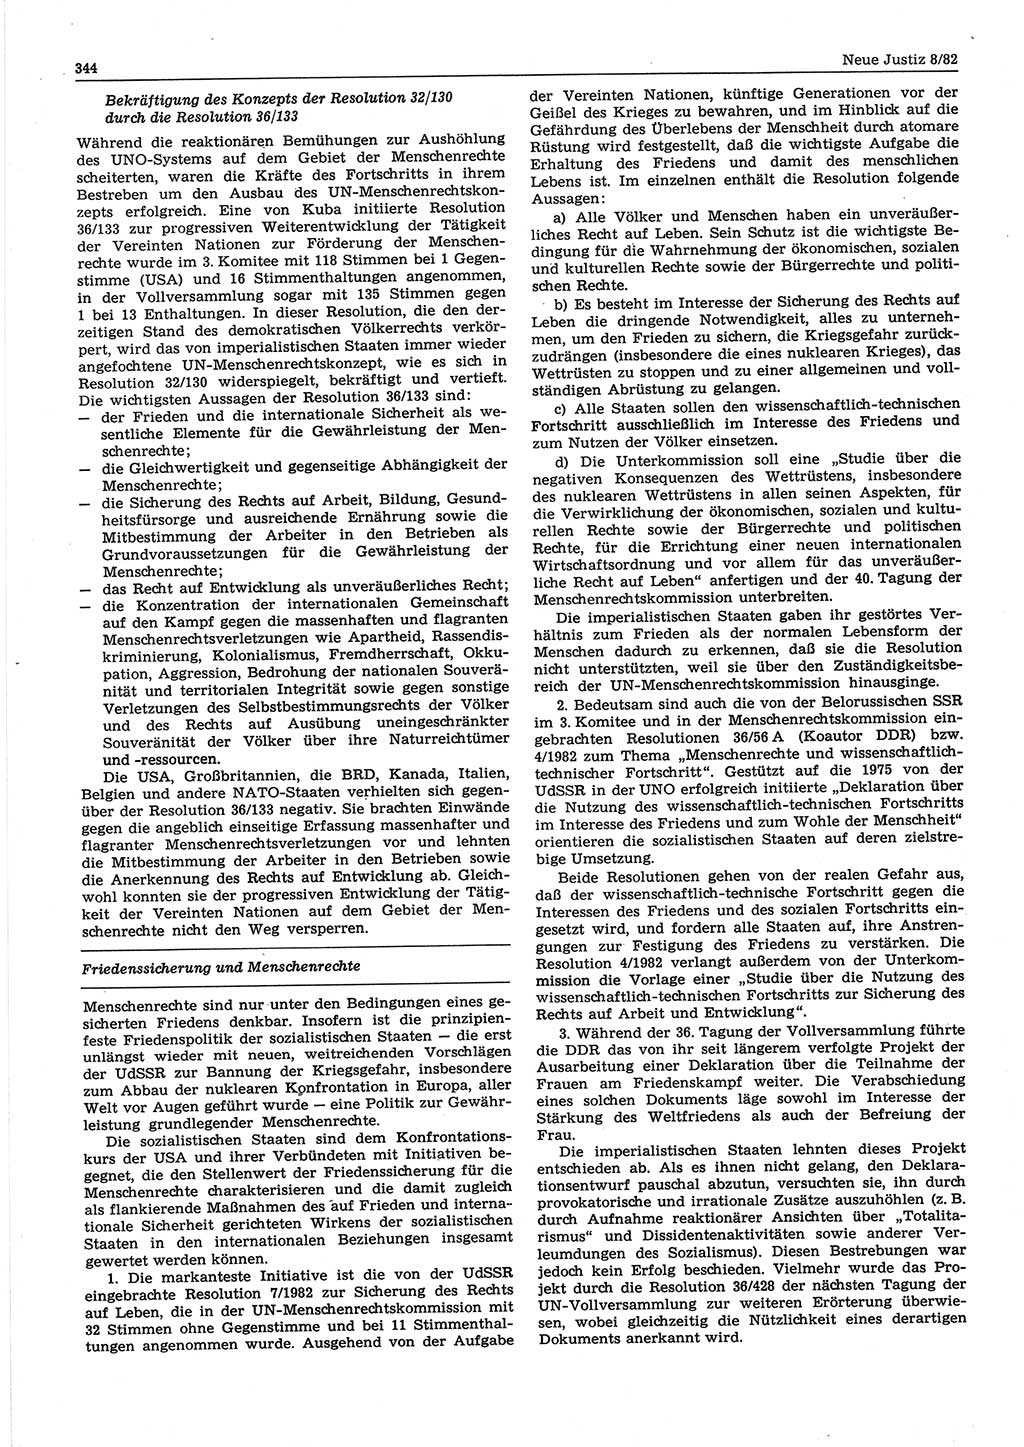 Neue Justiz (NJ), Zeitschrift für sozialistisches Recht und Gesetzlichkeit [Deutsche Demokratische Republik (DDR)], 36. Jahrgang 1982, Seite 344 (NJ DDR 1982, S. 344)